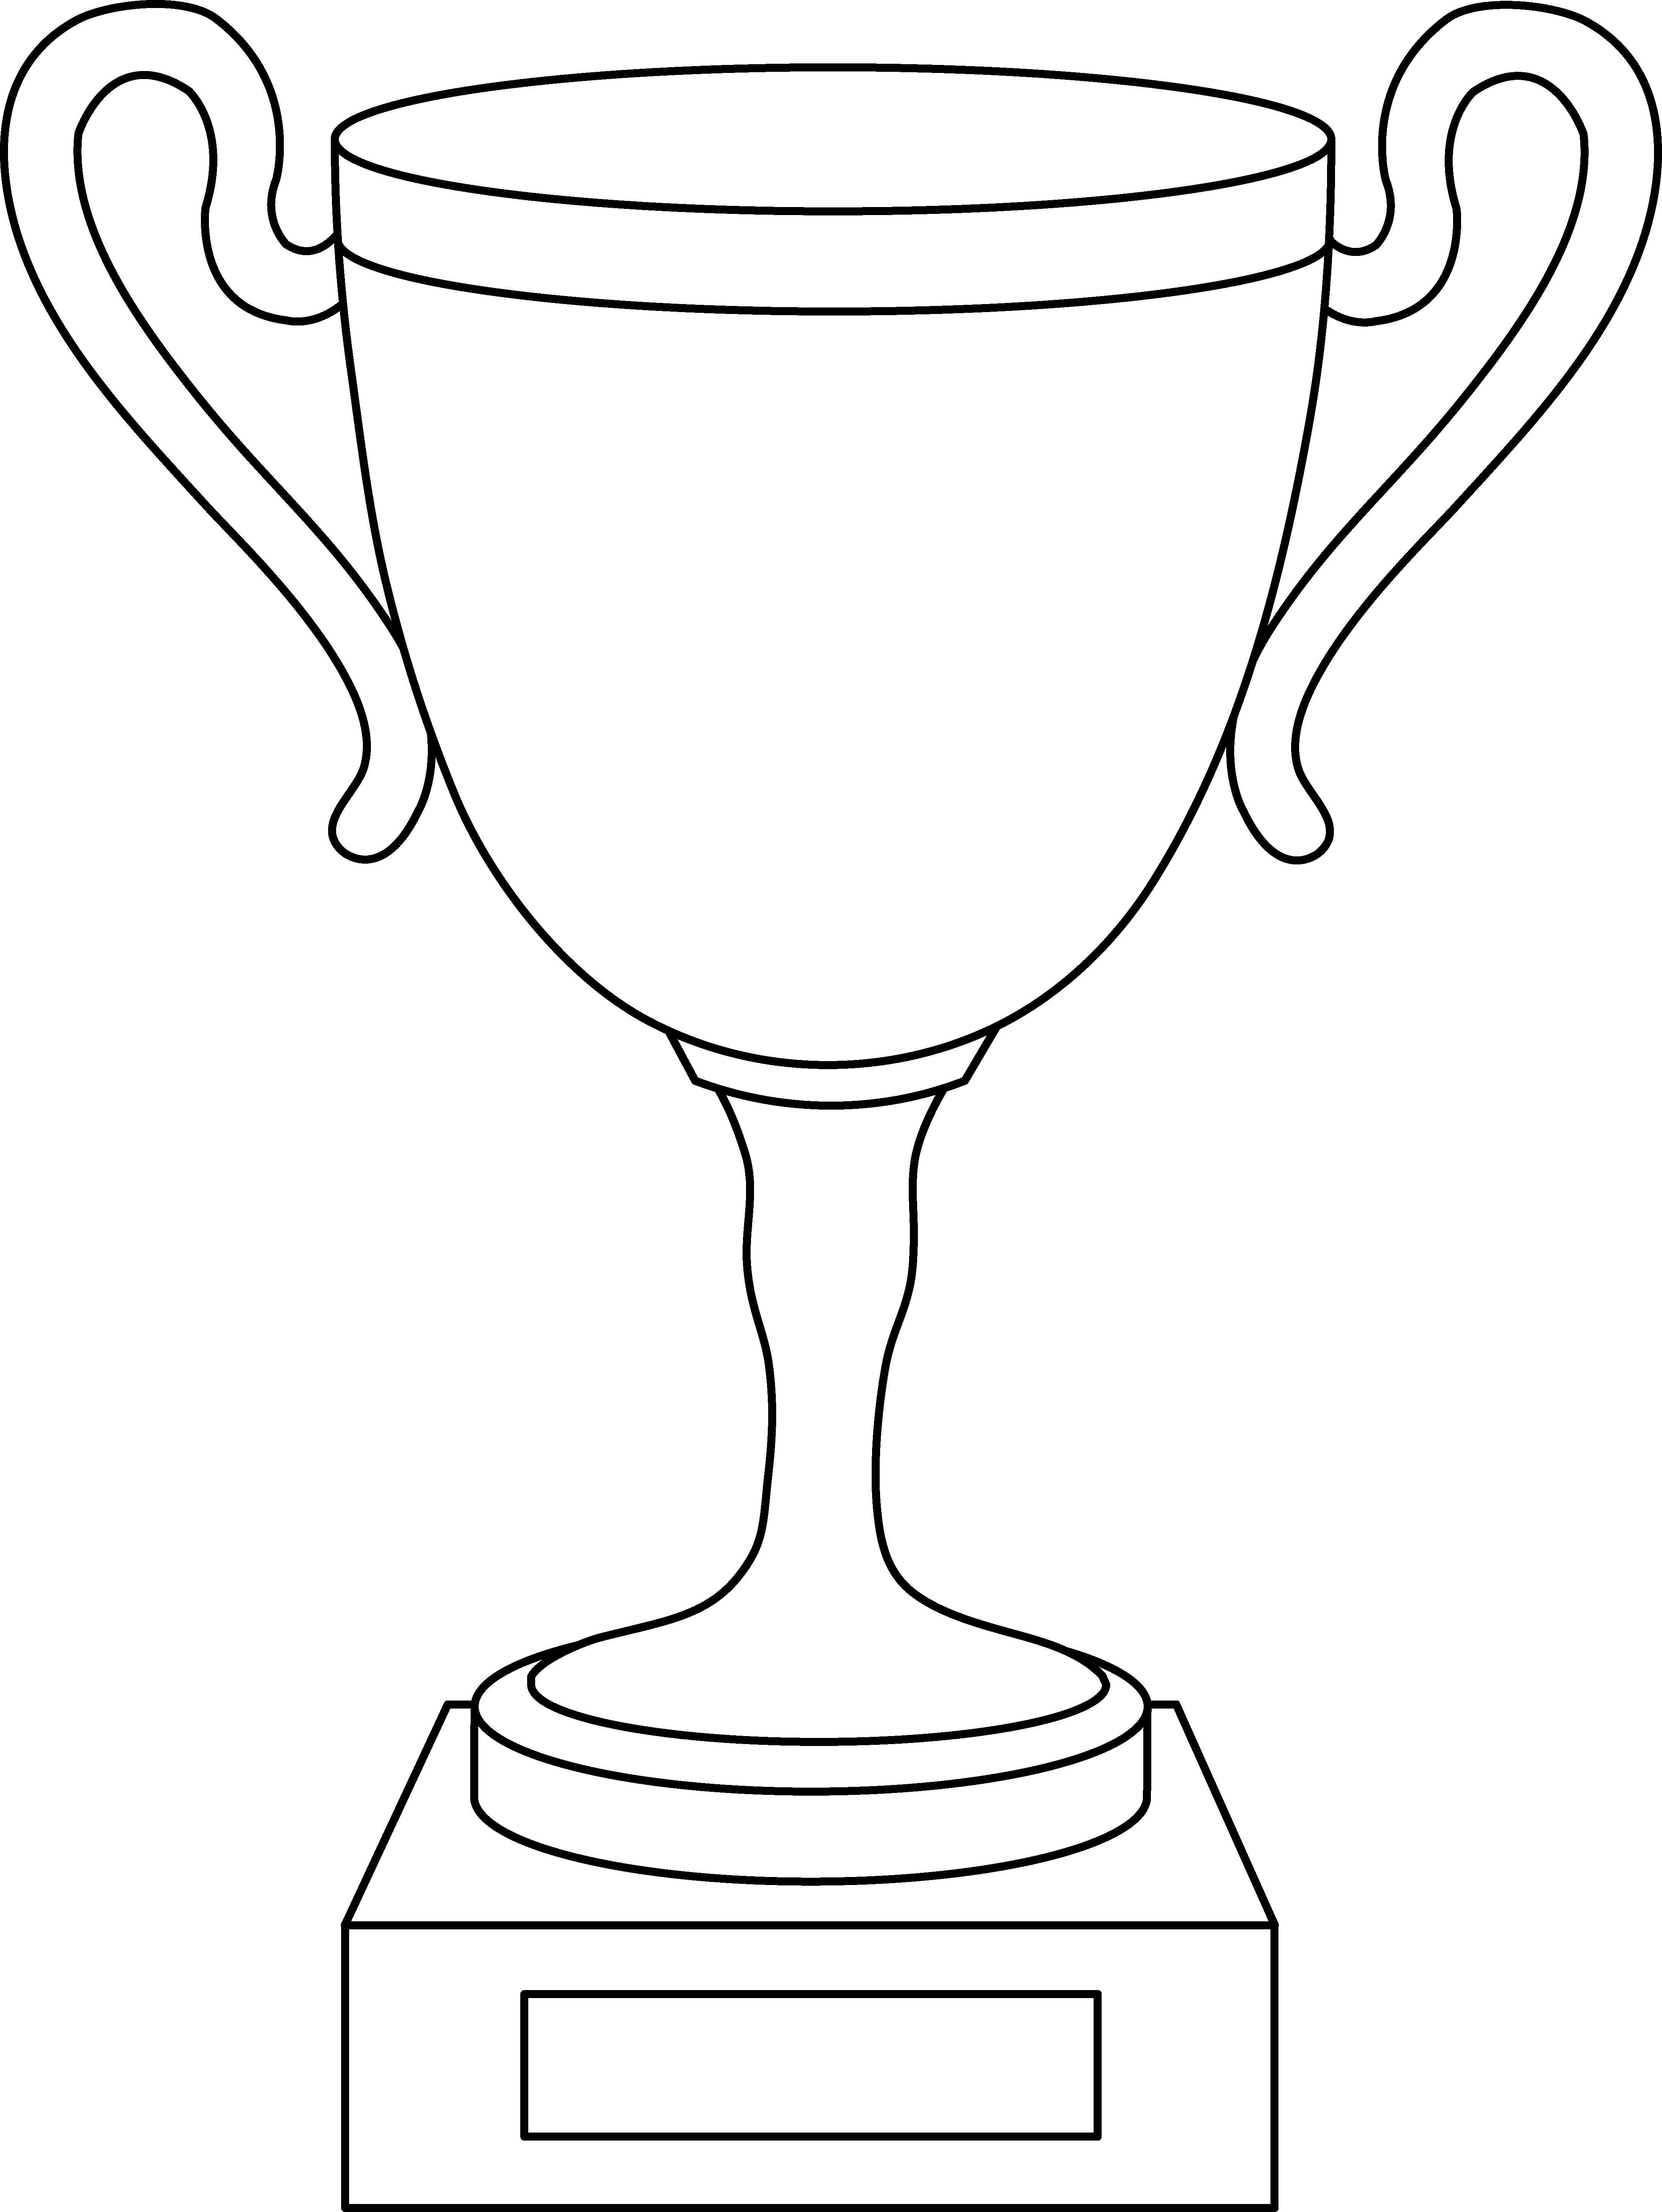 Trophy Cup Line Art Free Clip Art